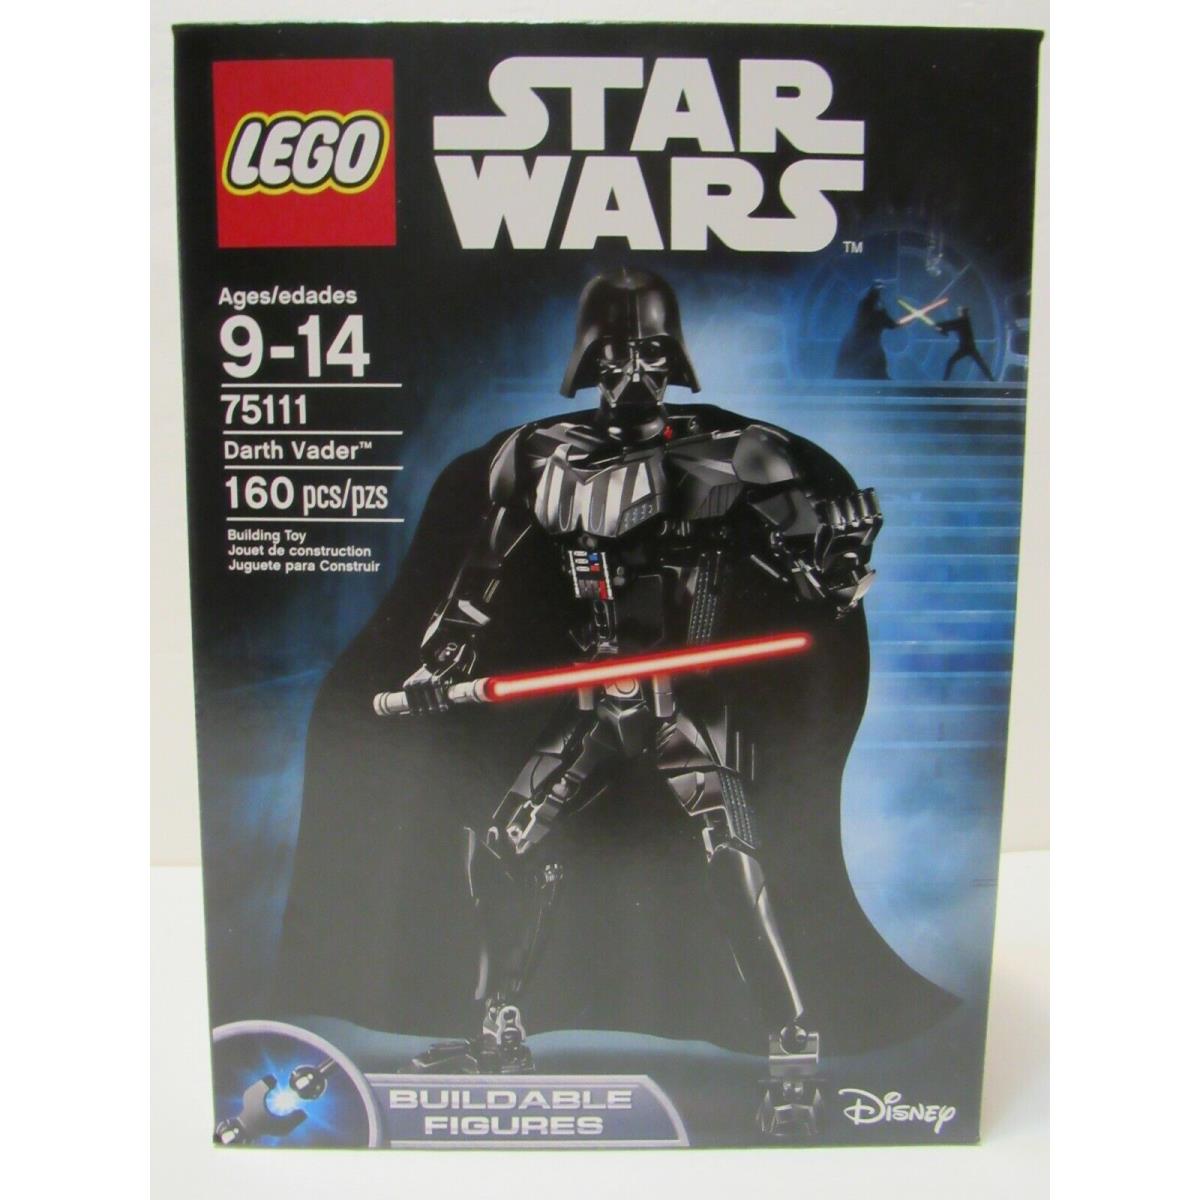 Lego Star Wars Darth Vader Building Kit 75111 Ages 9-14